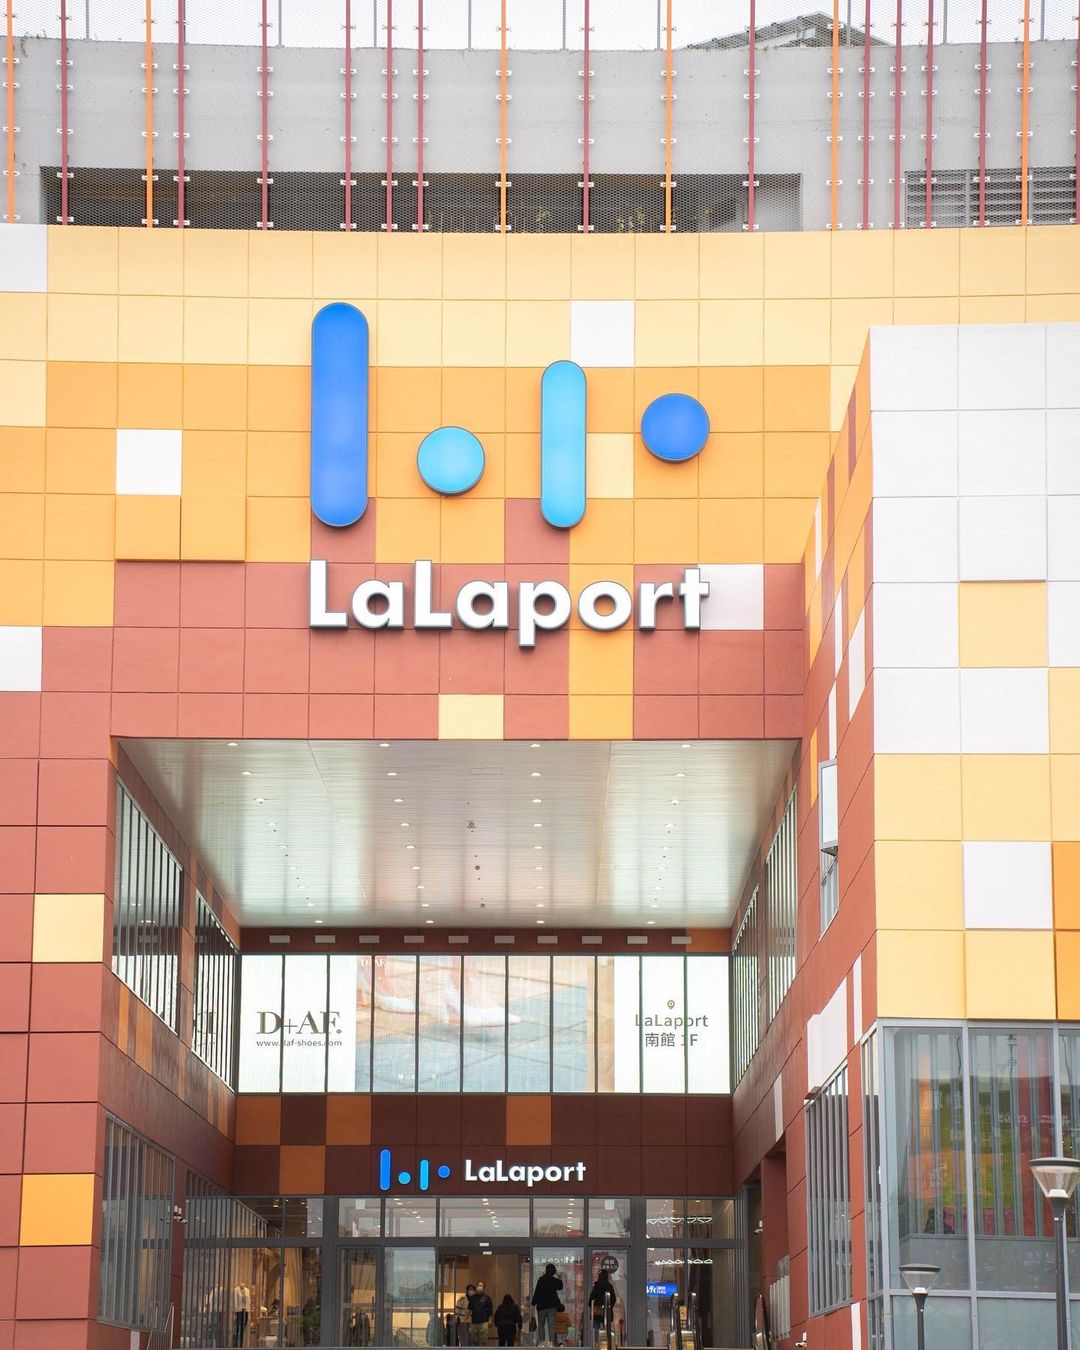 全台首座LaLaport在臺中，逛街購物順遊周邊文化聚落！

Taiwan ‘s first LaLaport in Taichu...